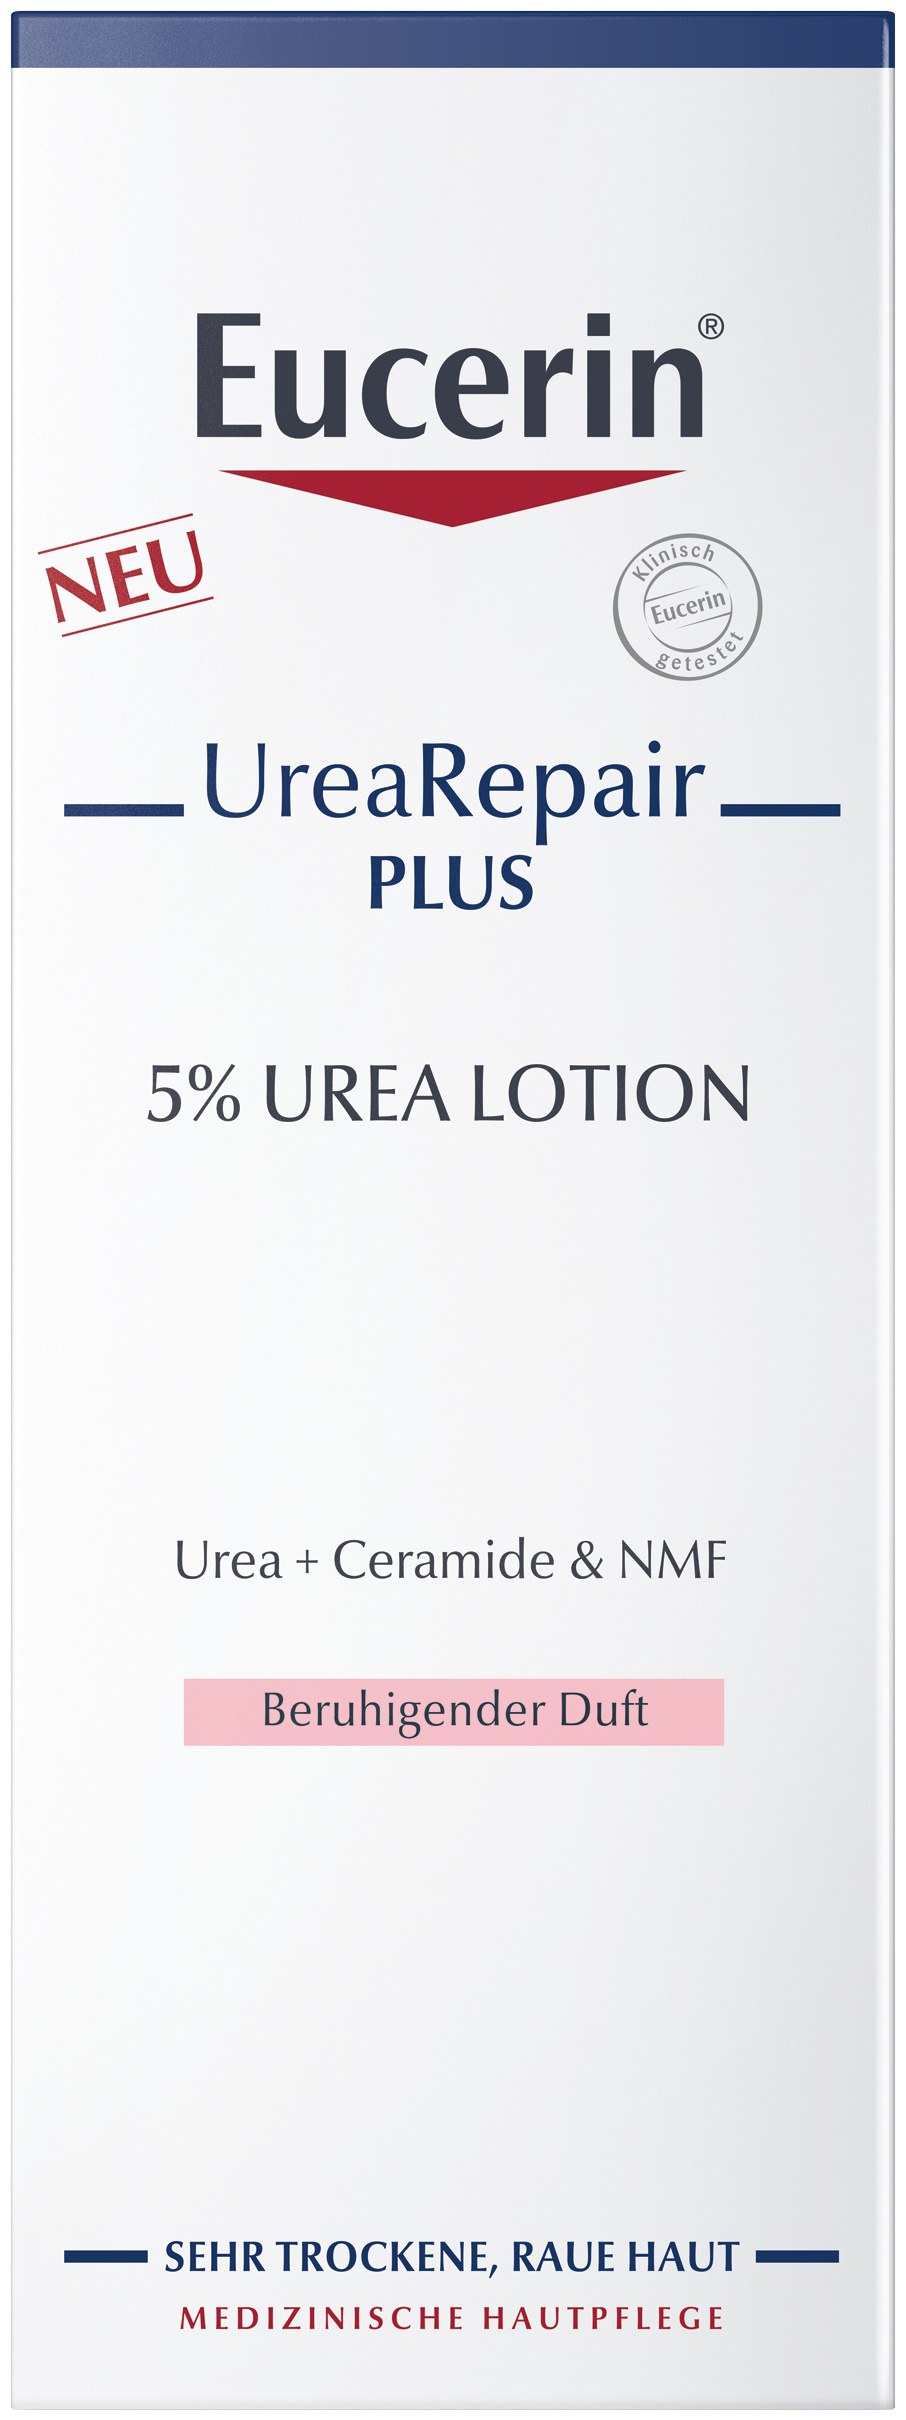 Eucerin Urea Repair PLUS Lotion 5% mit Duft (250 ml)